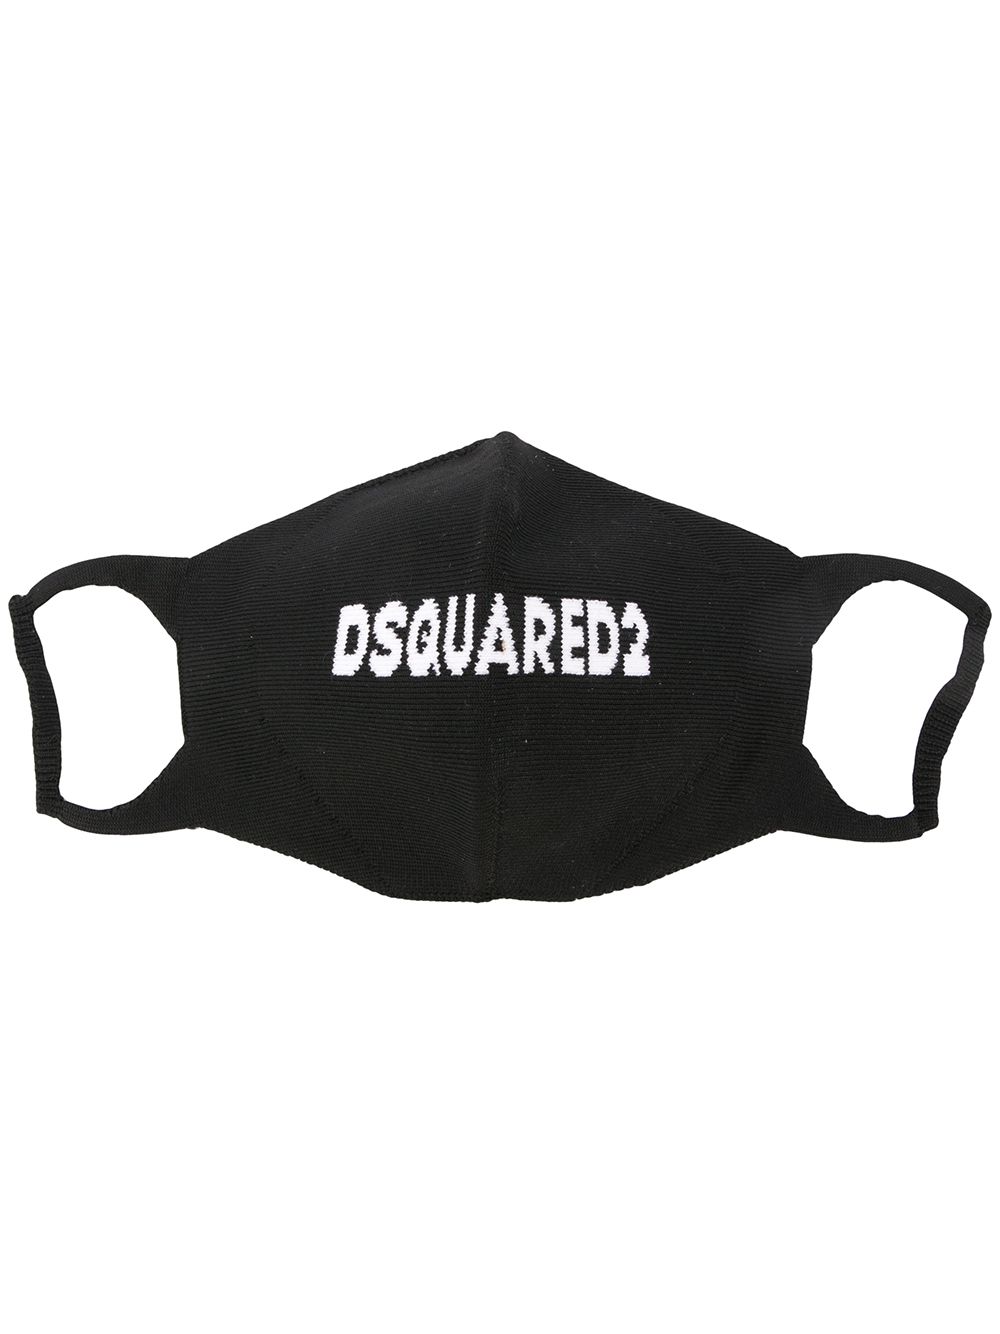 Dsquared2 logo-embellished face mask black/white - Maison De Fashion 